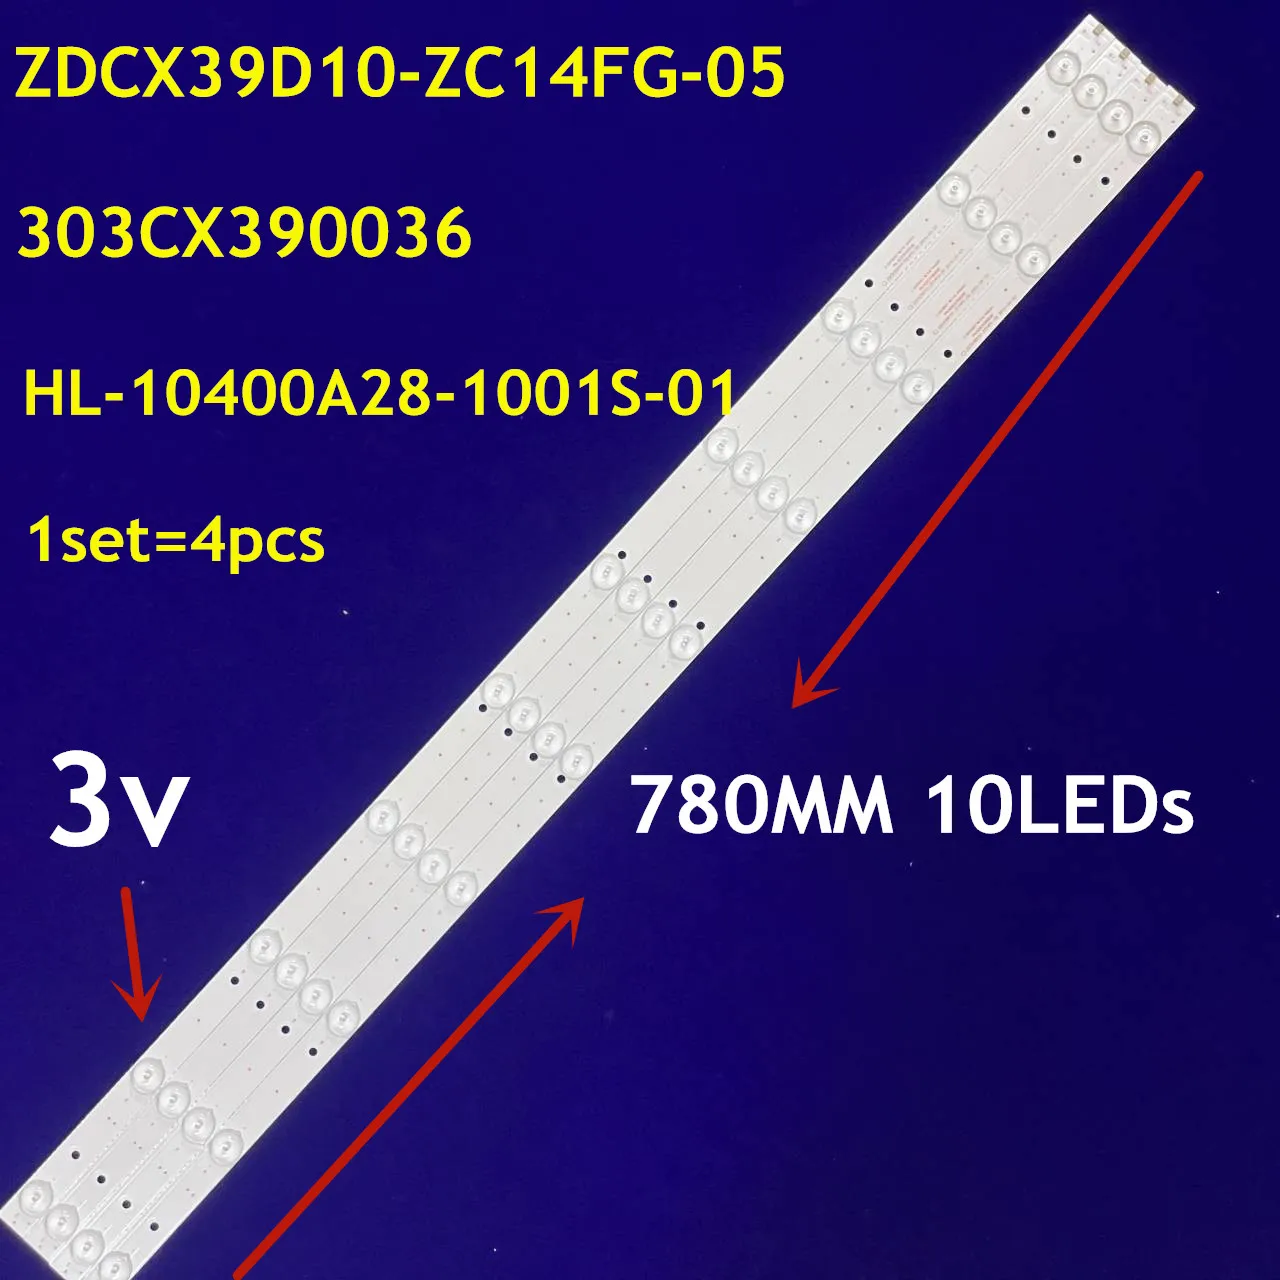 5est=20pcs LED Strip ZDCX39D10-ZC14FG-05 HL -00390A28-1001-01 CX390M05 DLED40YEKJ 4X10 001 HL-10400A28-1001S-01  For LED-42Q5D